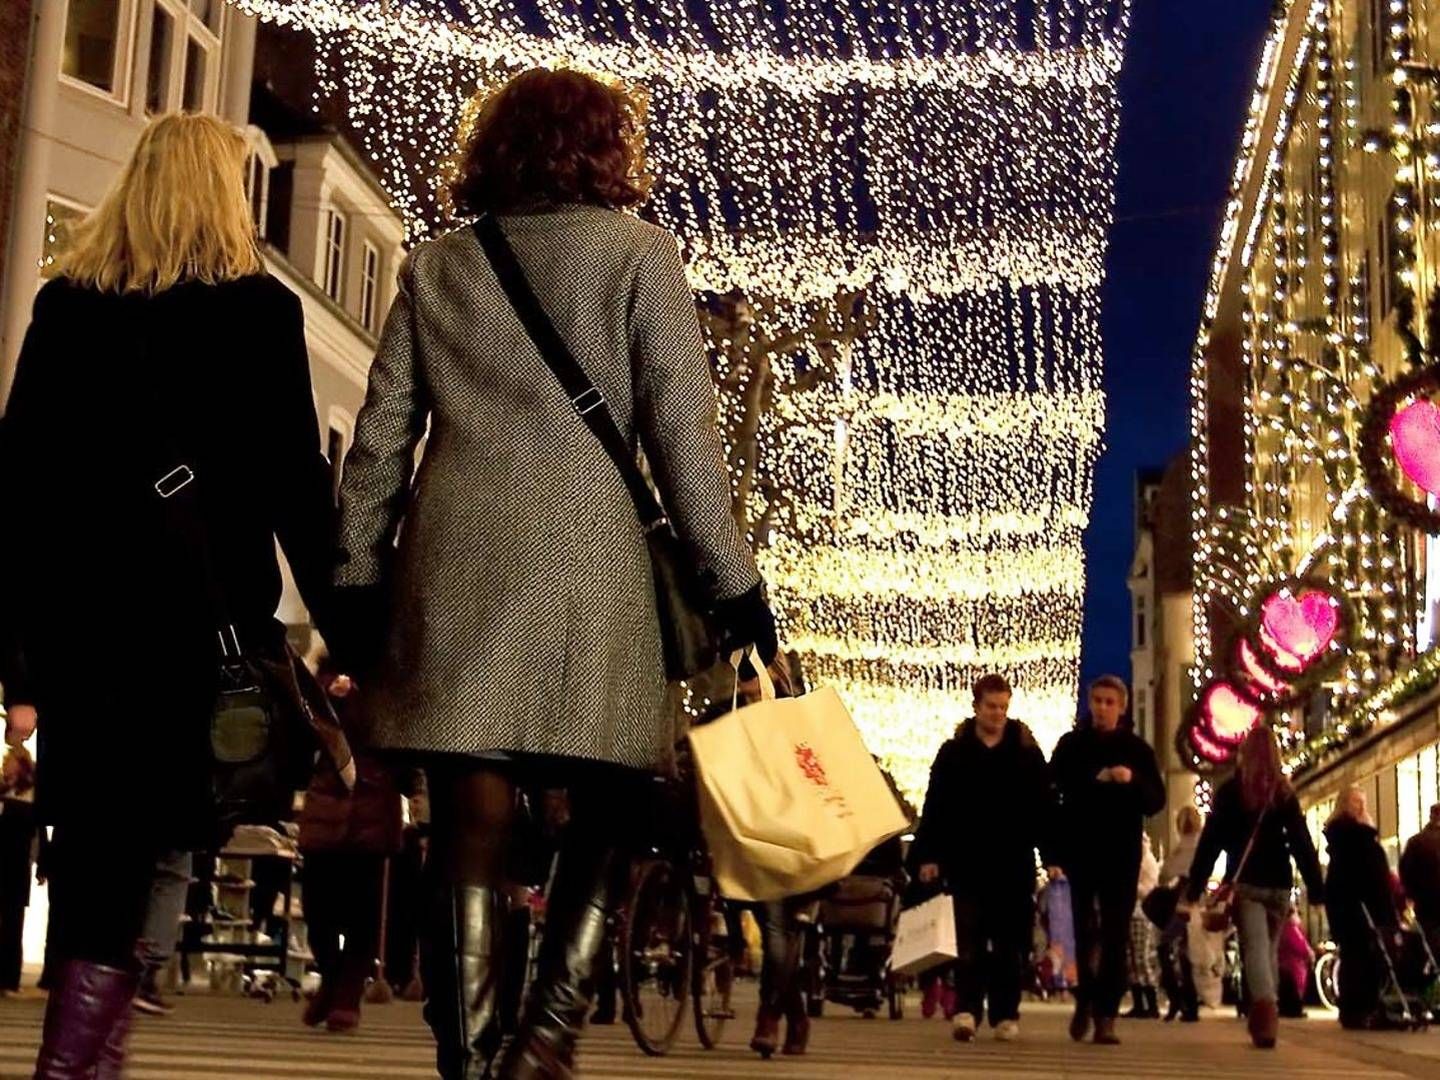 Det vigtige julesalg i detailhandlen kan blive ramt af øgede leveomkostninger i Storbritannien, venter analyseinstitut. | Foto: Ole Lind/Jyllands-Posten/Ritzau Scanpix/Jyllands-Posten